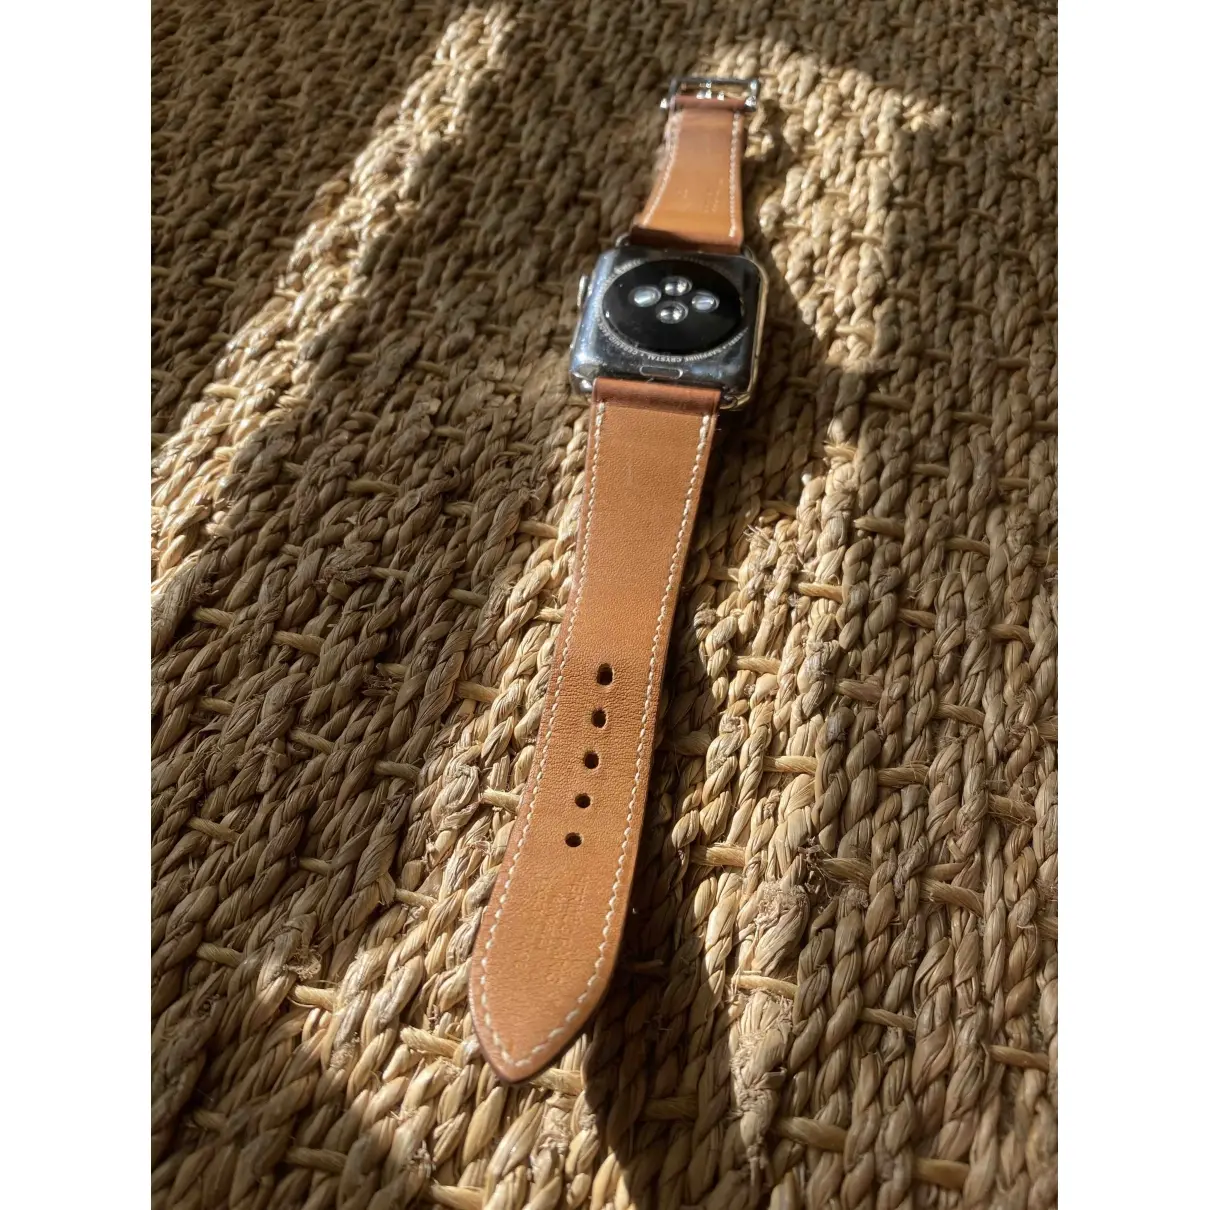 Buy Apple Apple Watch x Hermès 42mm watch online